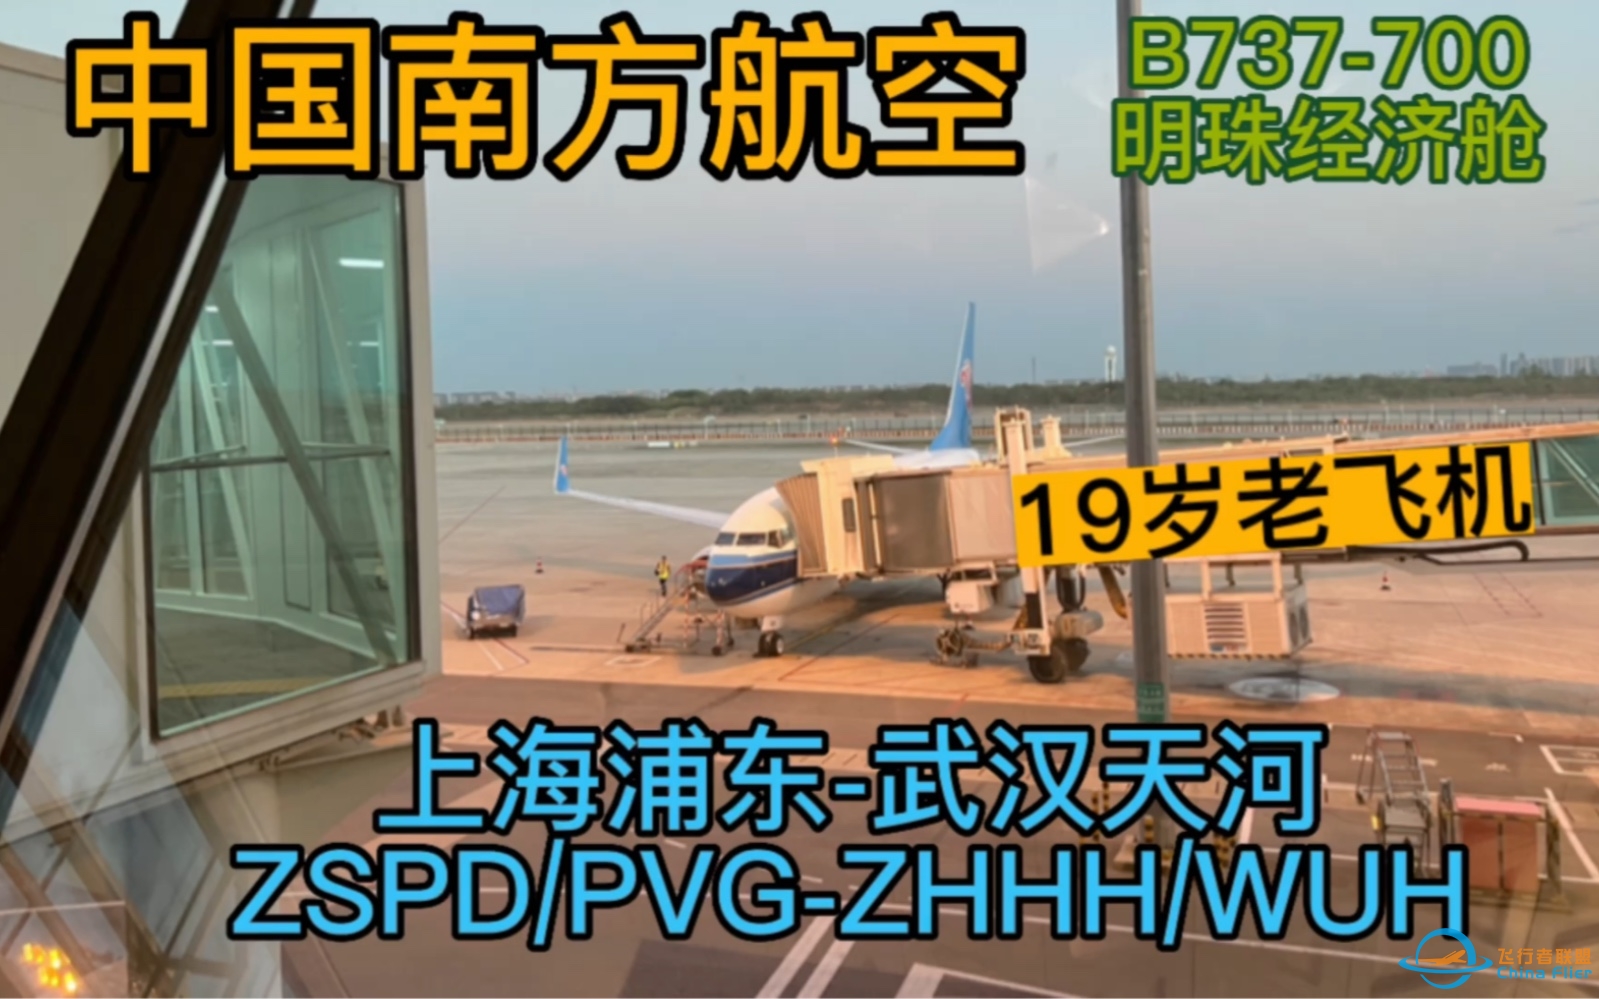 【Flight Log】乘坐南航19年机龄B737-700明珠经济舱从上海浦东飞往武汉天河。-1960 